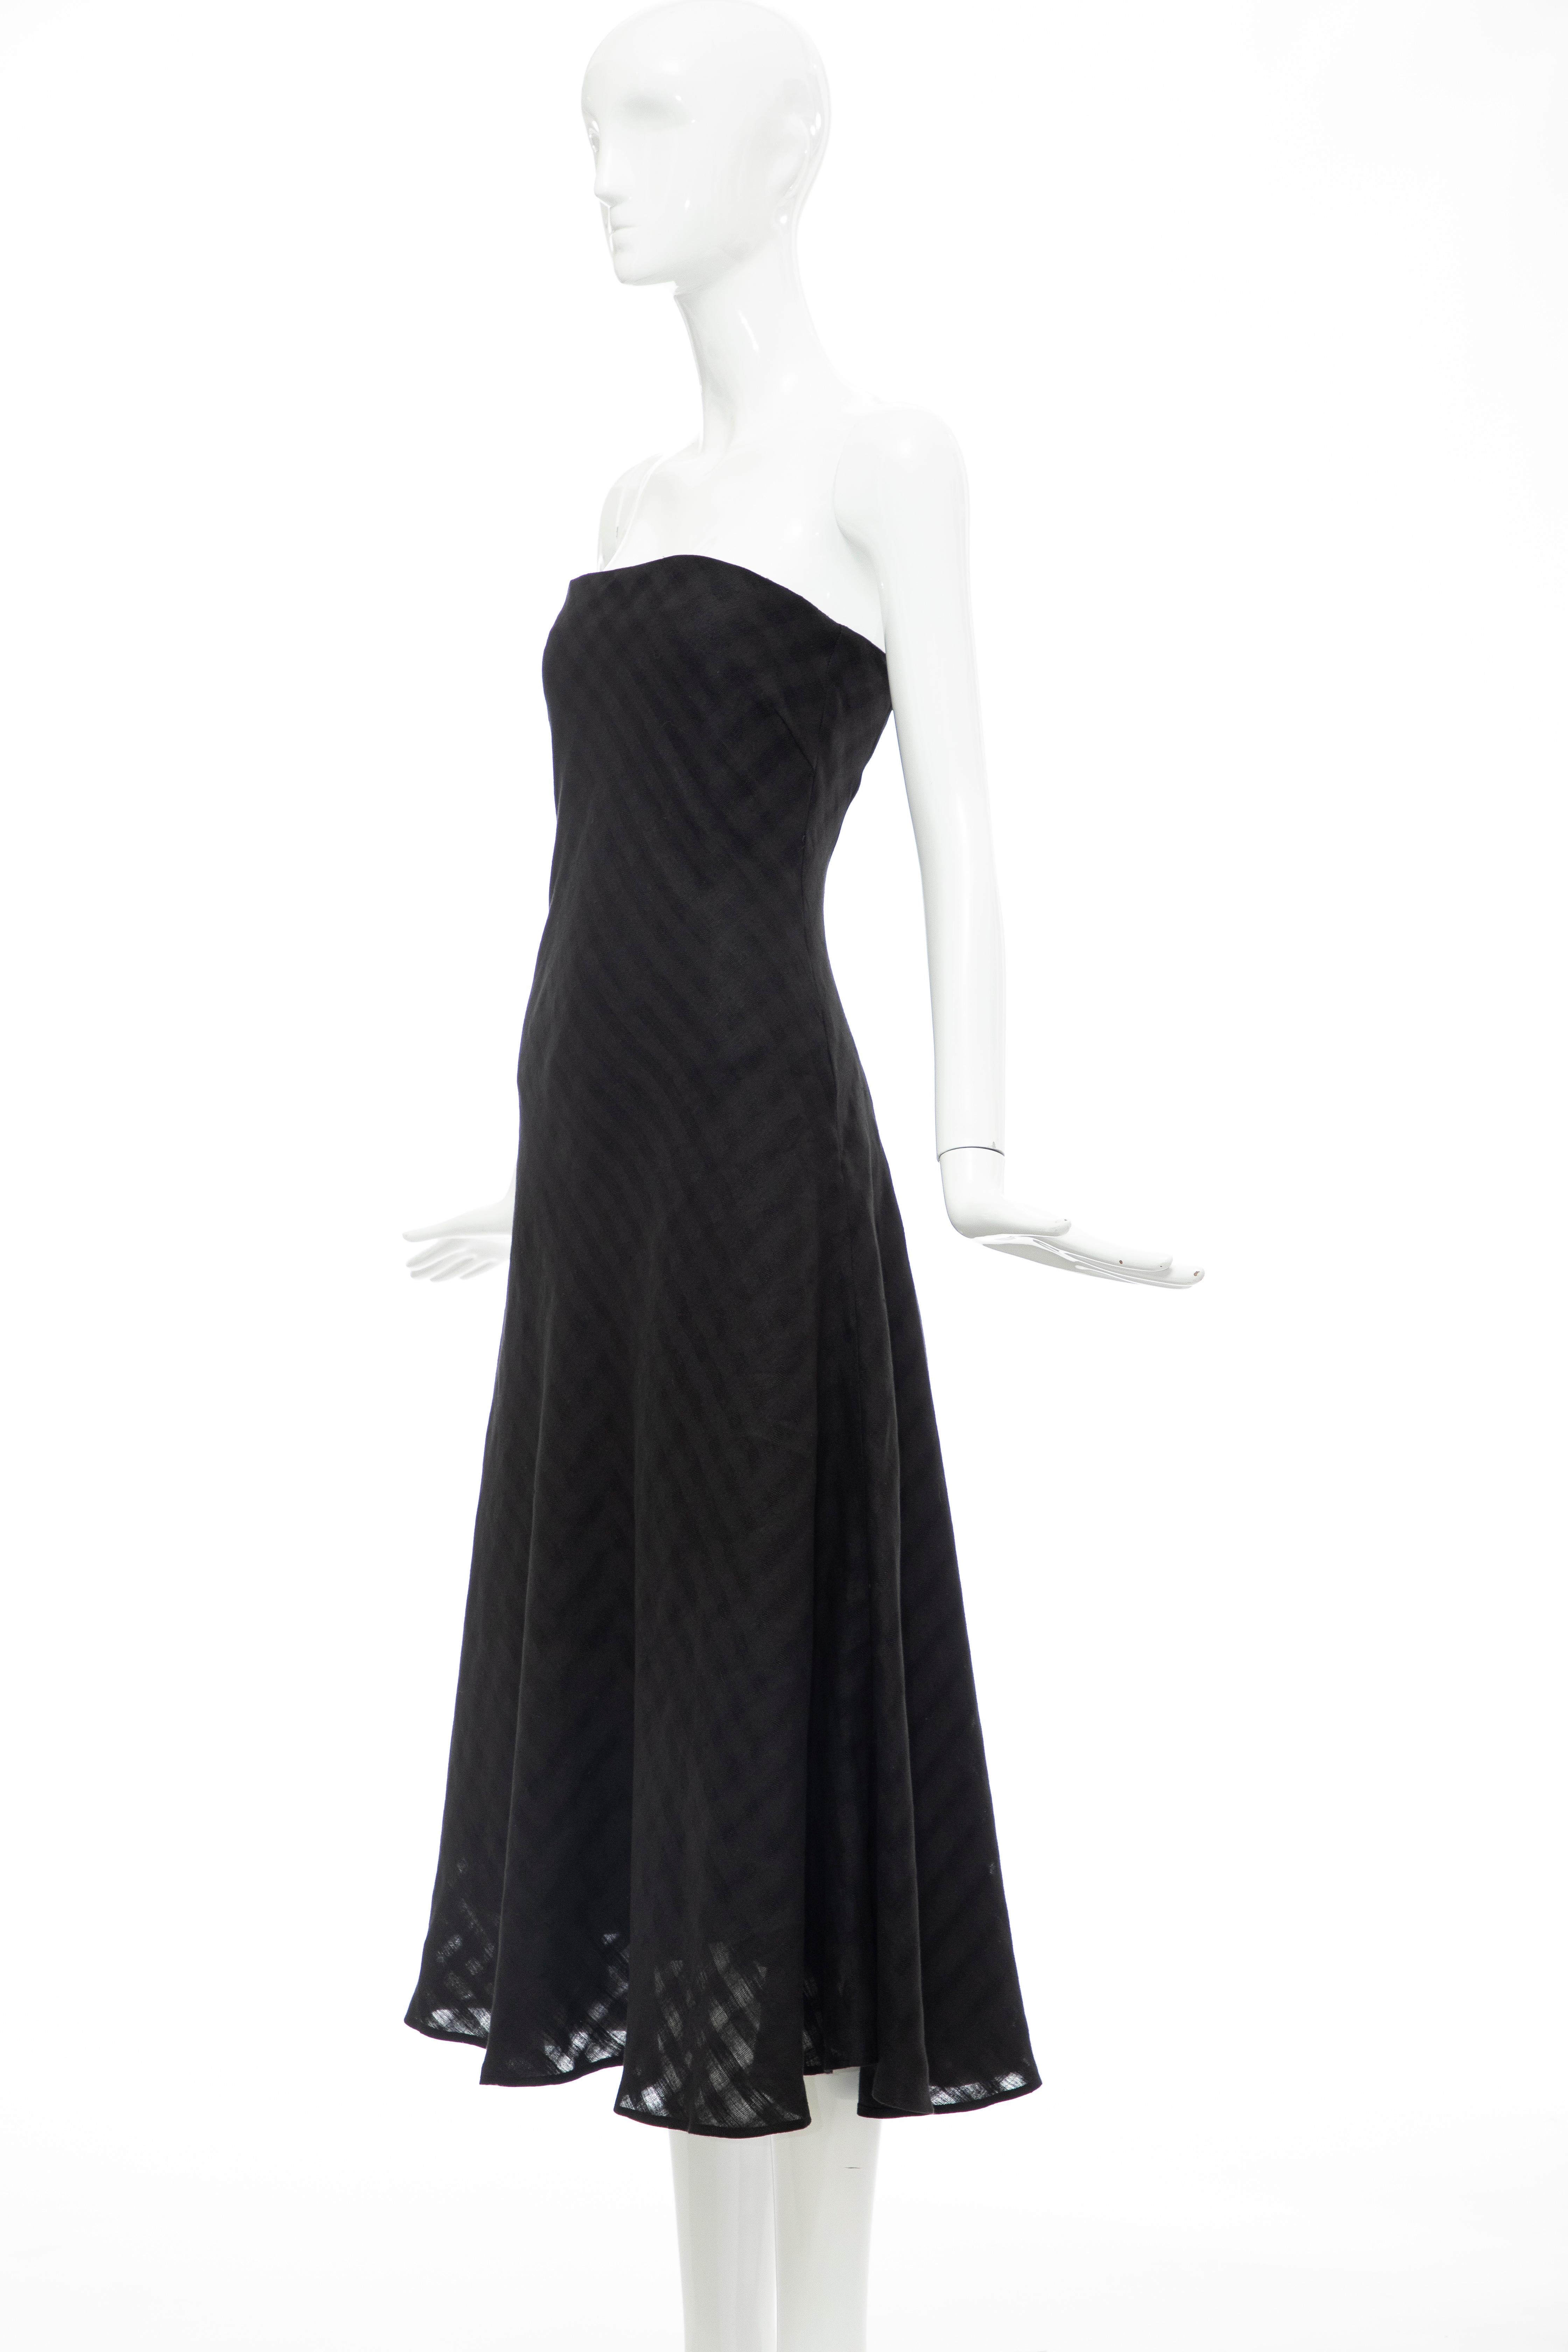 Olivier Theyskens Runway Black Linen Dress, Spring 2000 For Sale 7